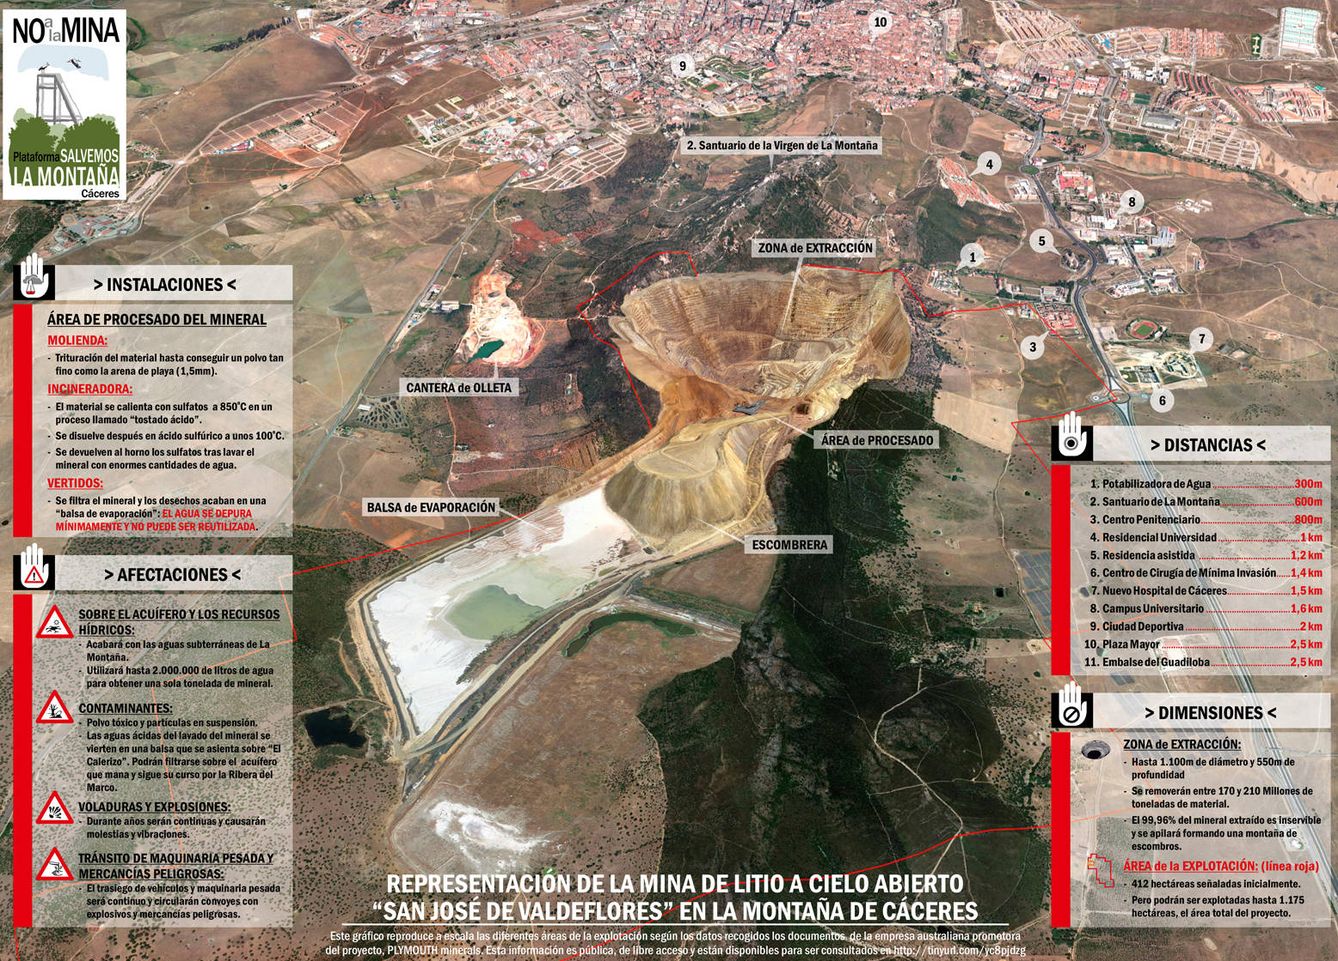 Recreación de la mina de litio de Cáceres. (Plataforma Salvemos la Montaña de Cáceres)